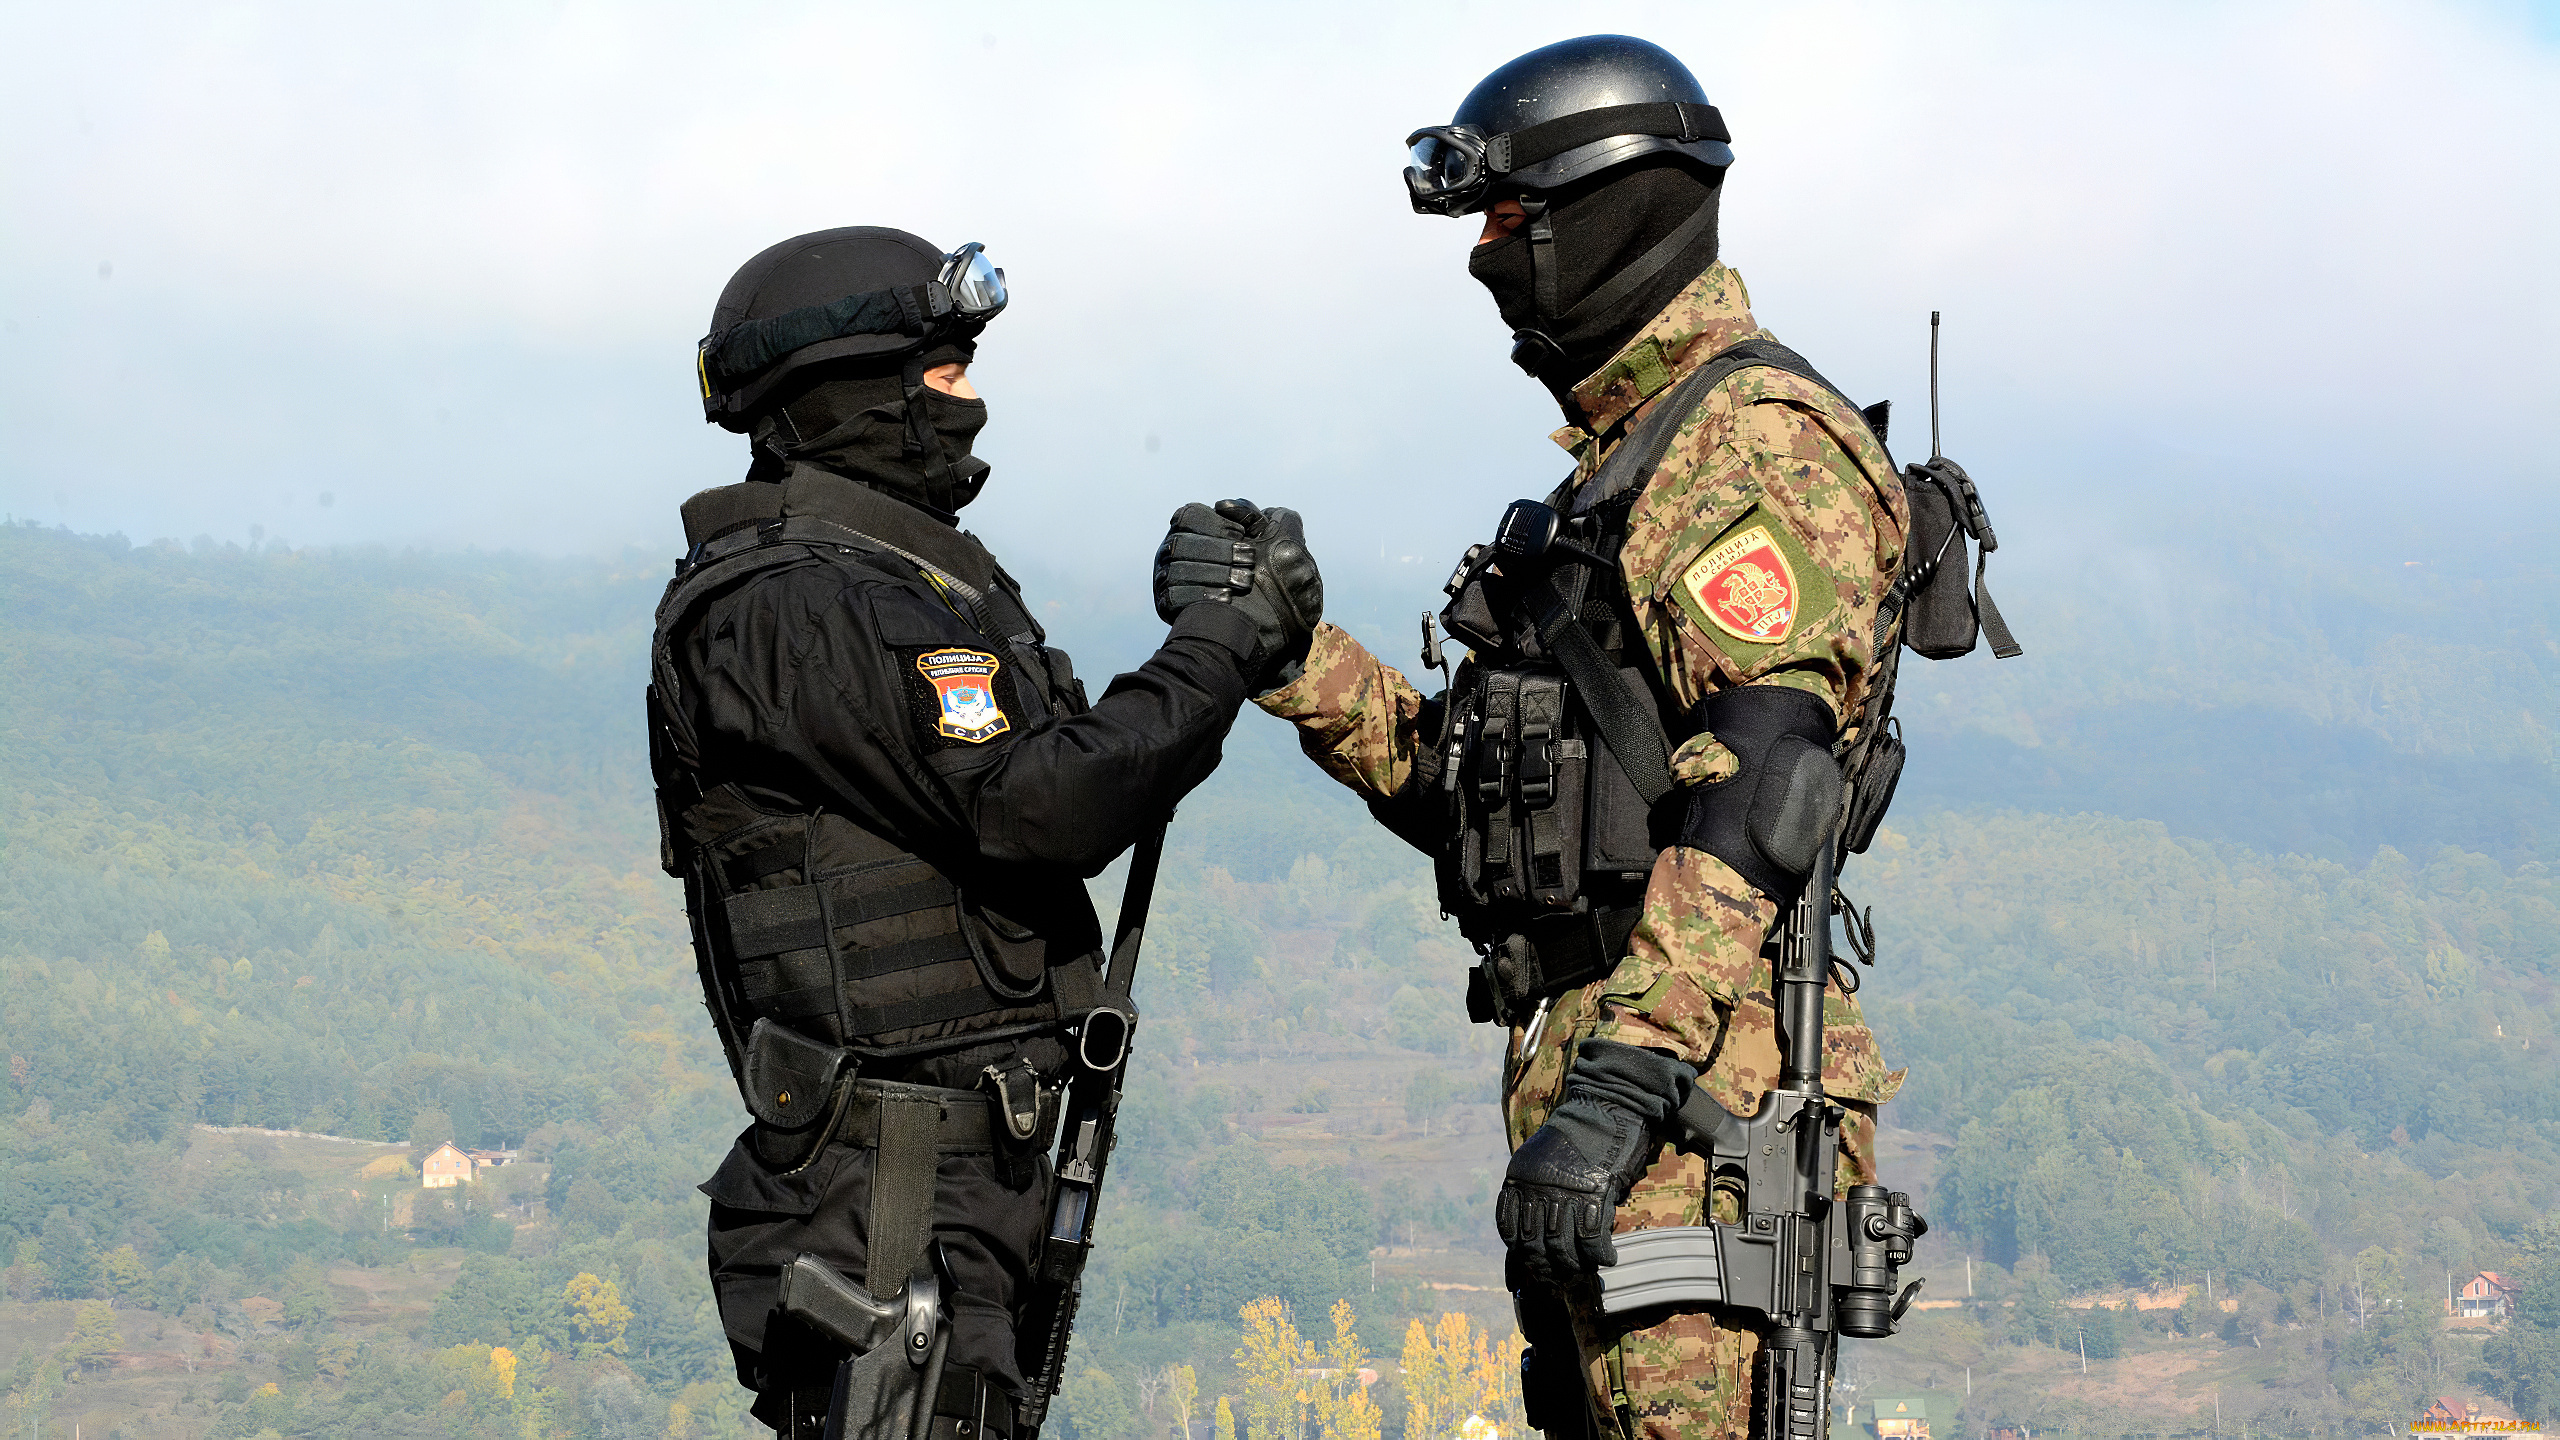 оружие, армия, спецназ, полиция, военные, пистолет, рукопожатие, униформа, сербский, cербия, маска